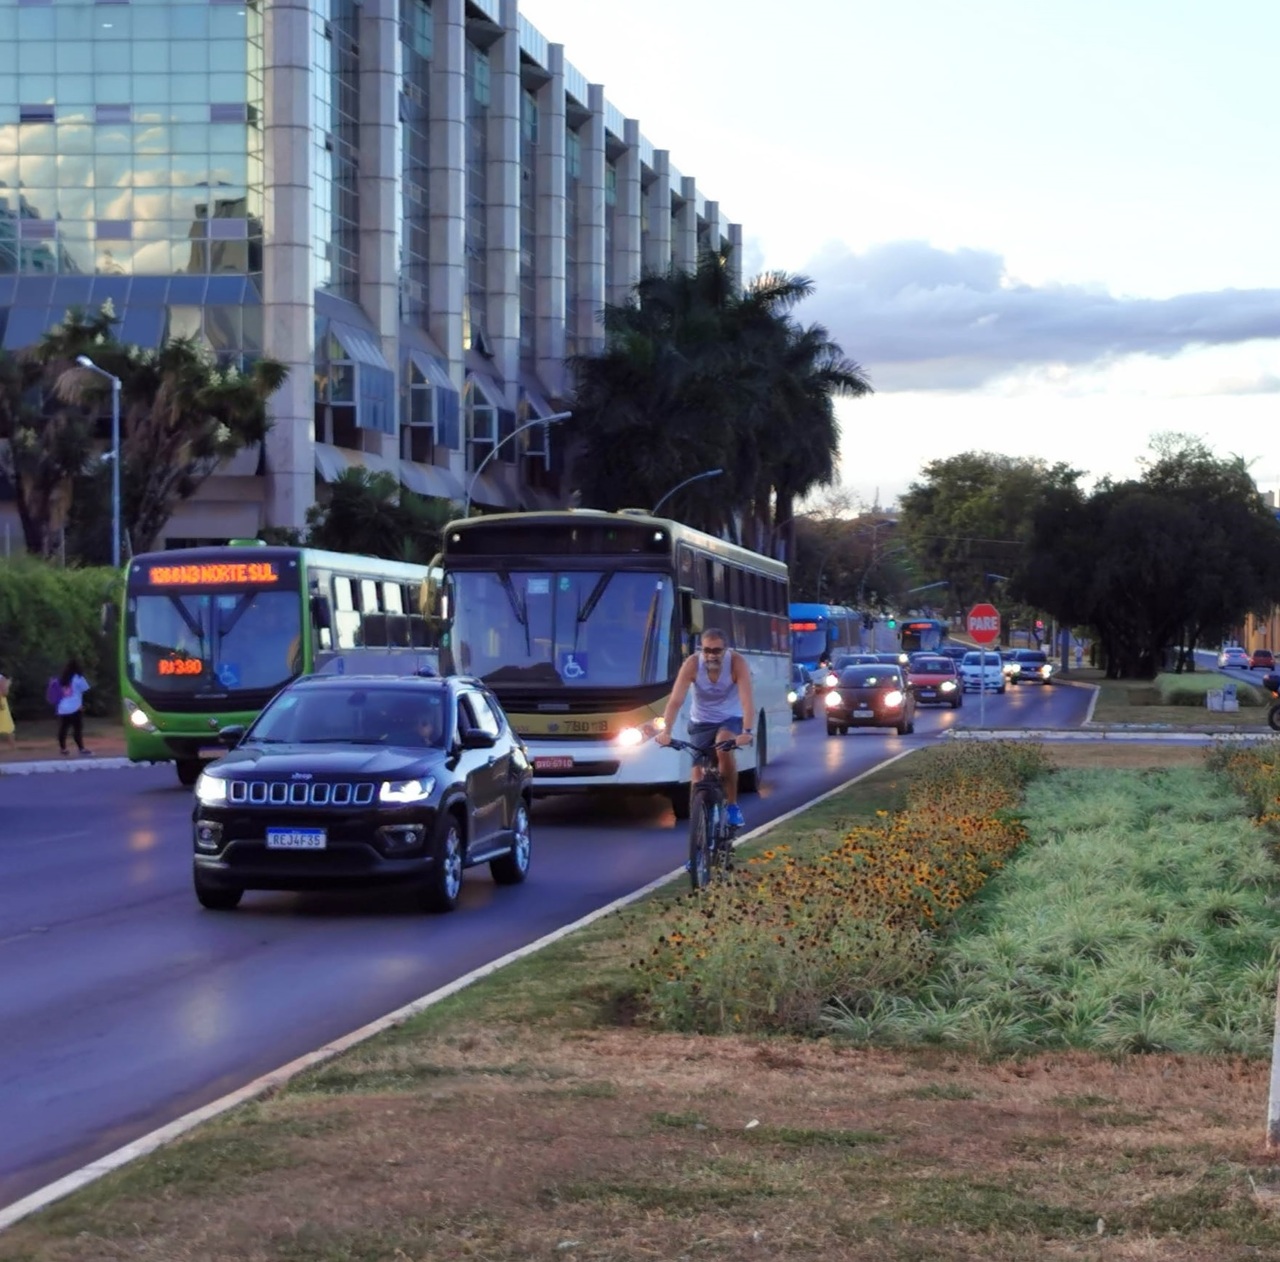 Mobility in Brasília